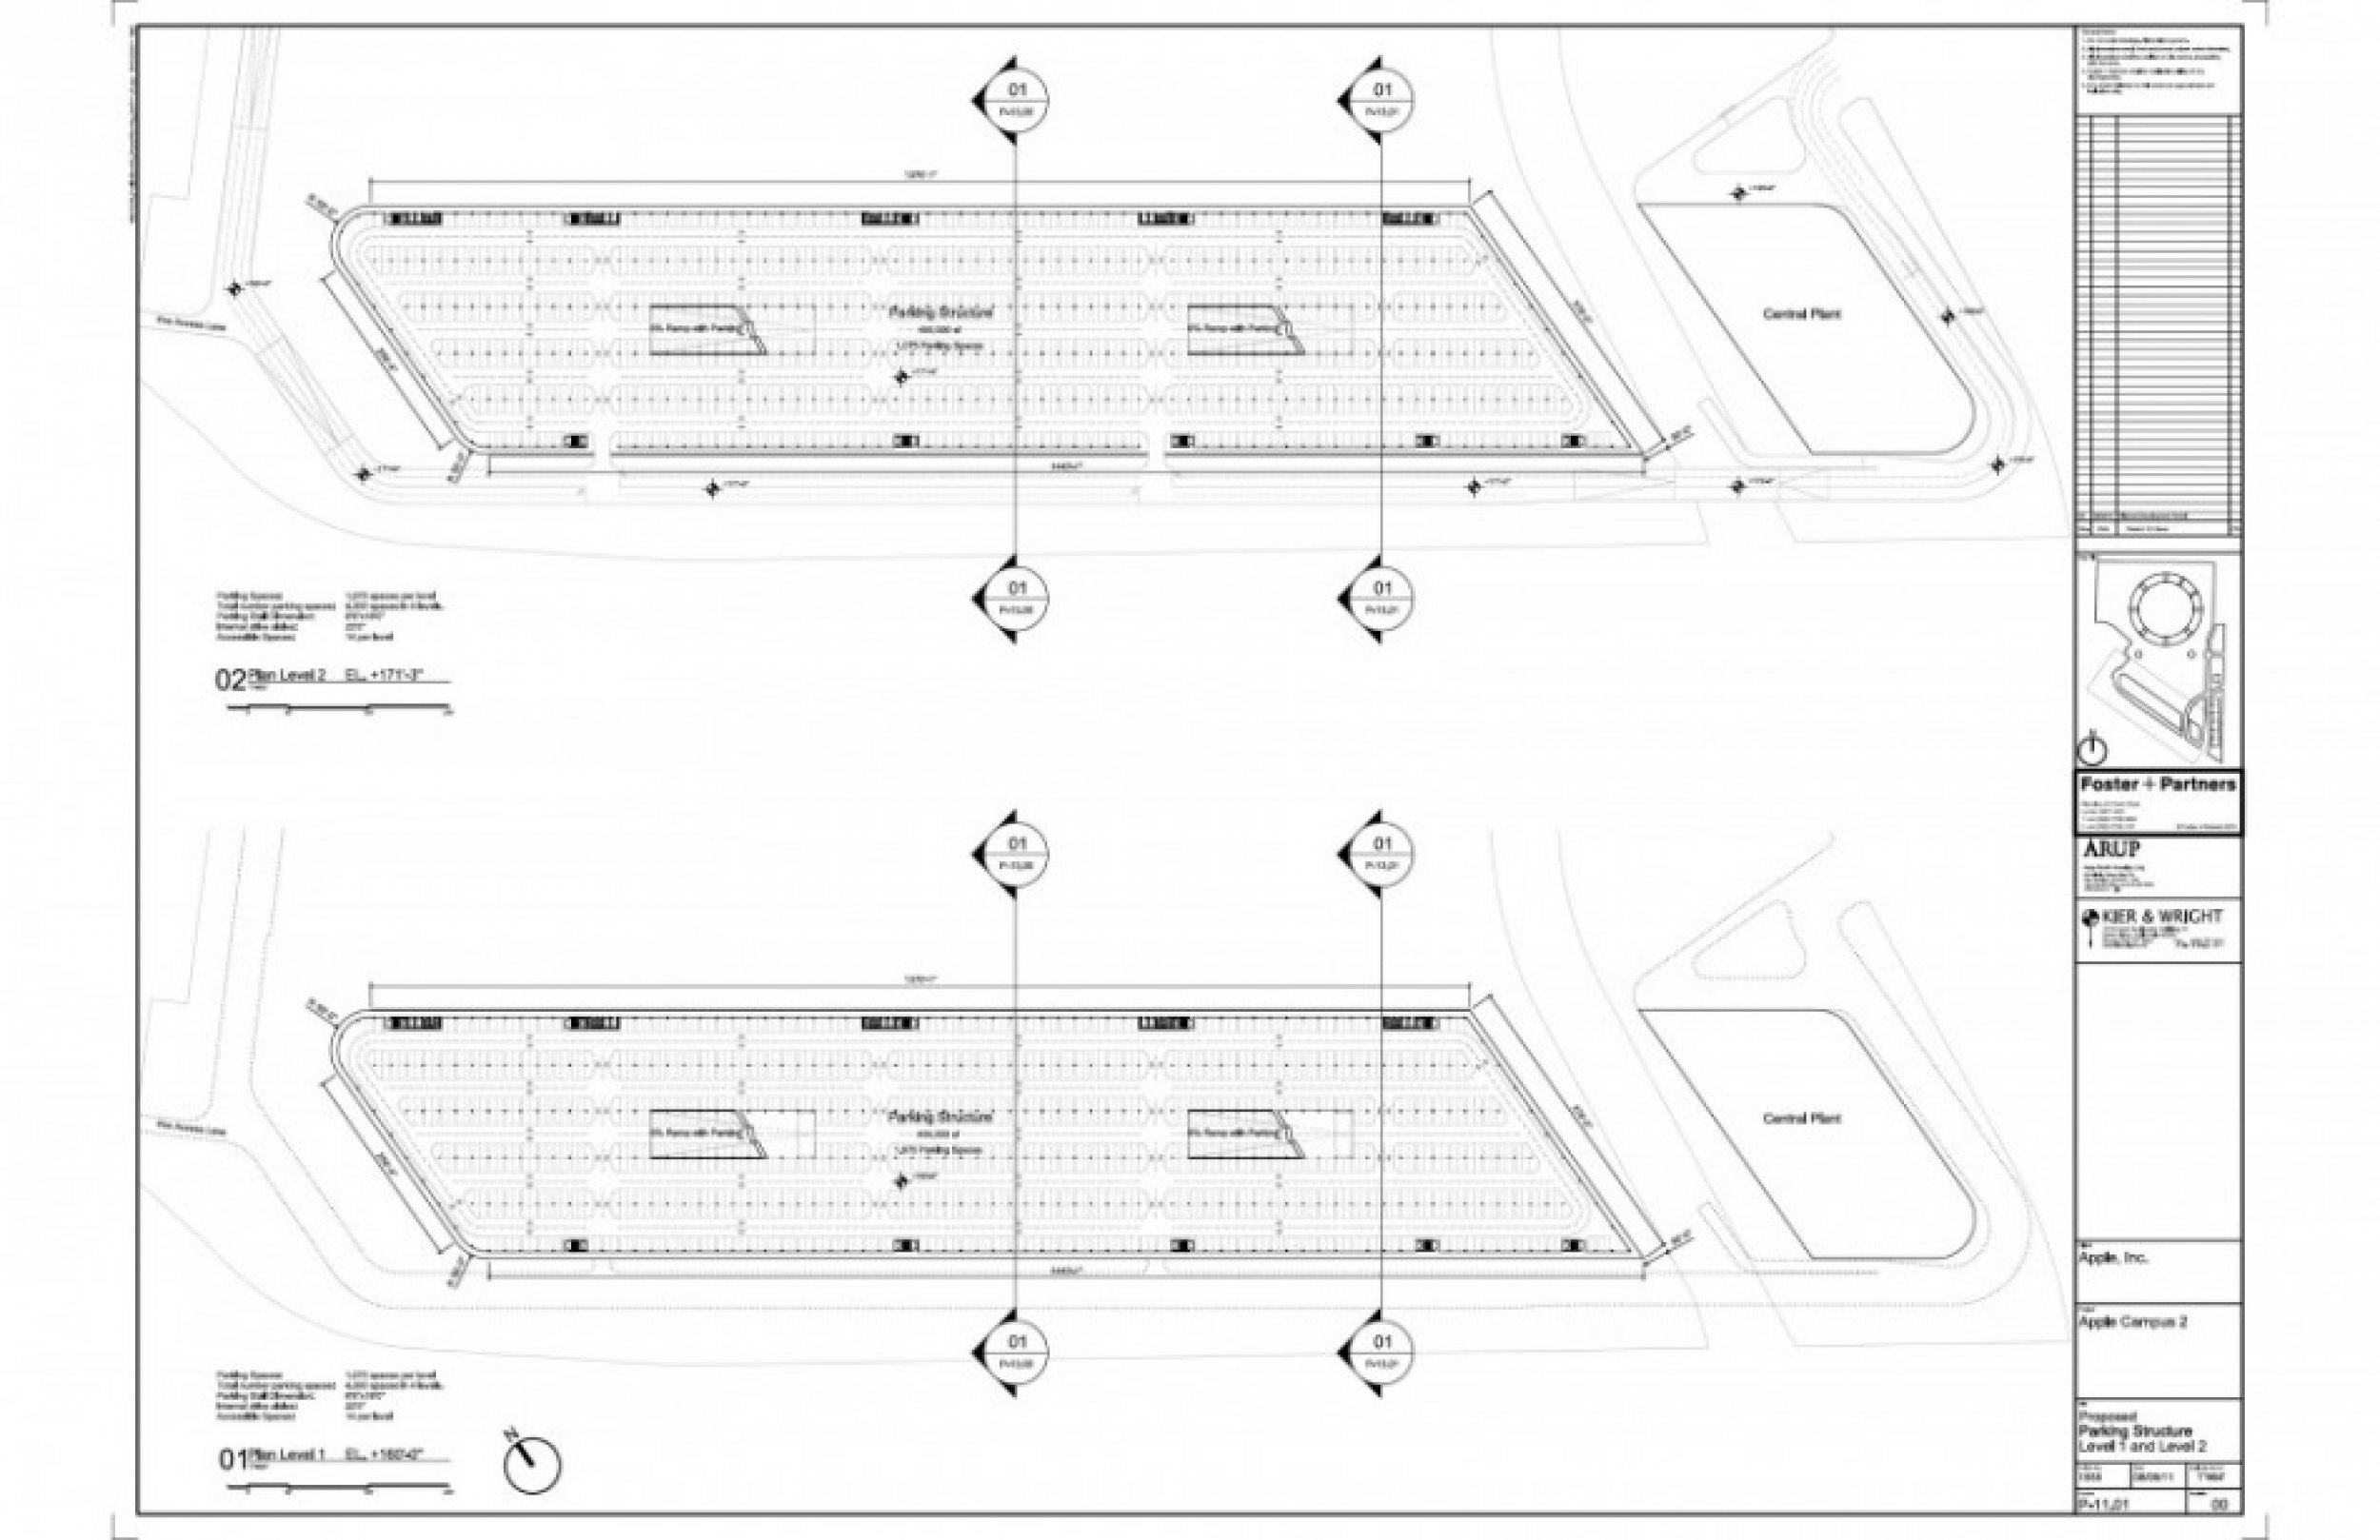 Floor plan cross-section